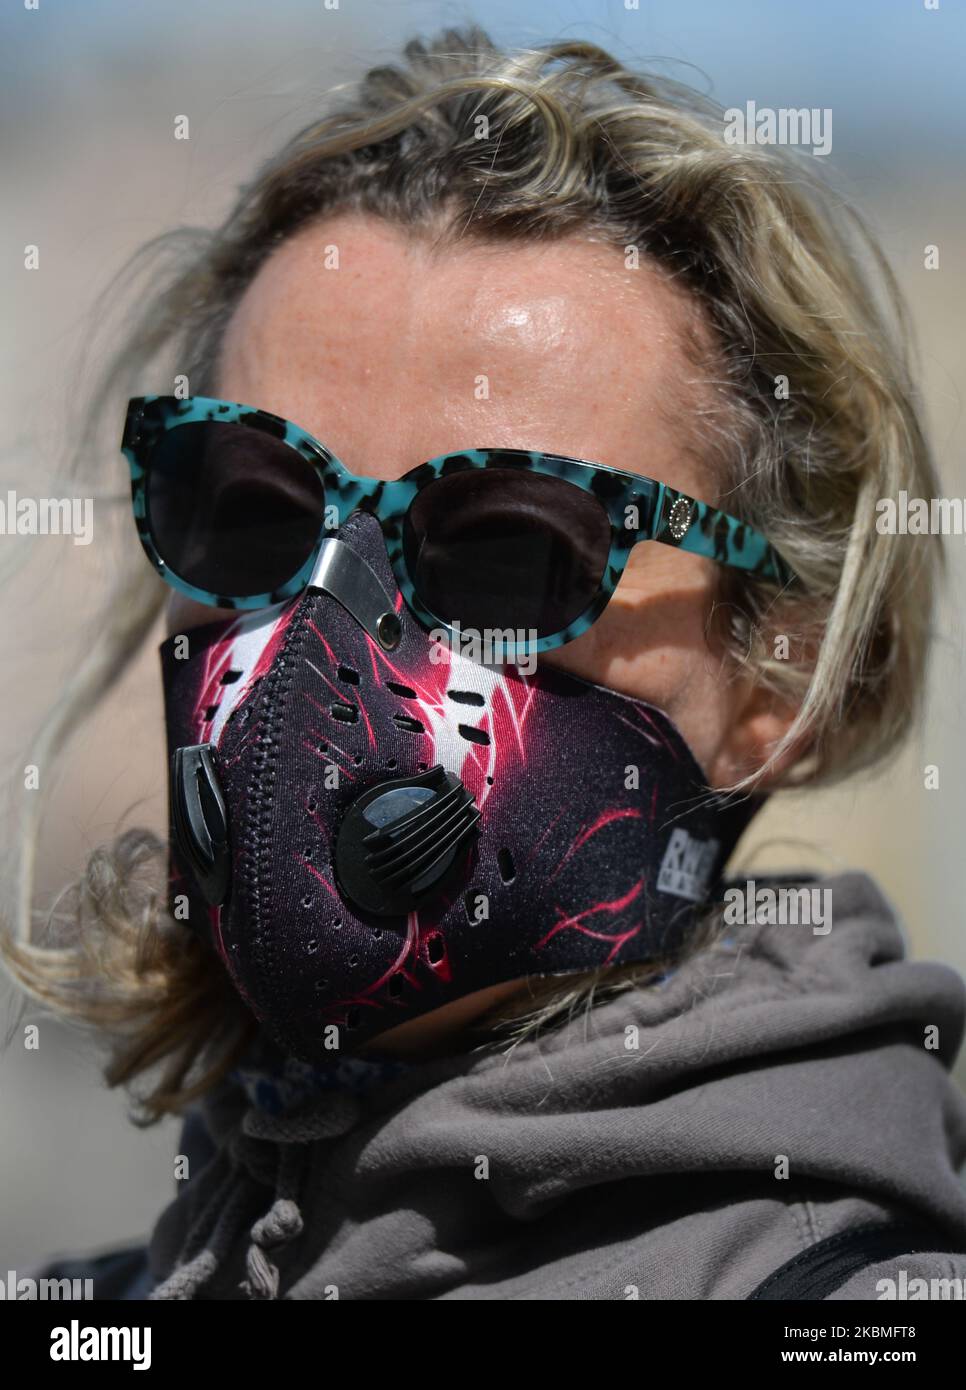 Ania indossa una maschera protettiva mentre si trova in una strada